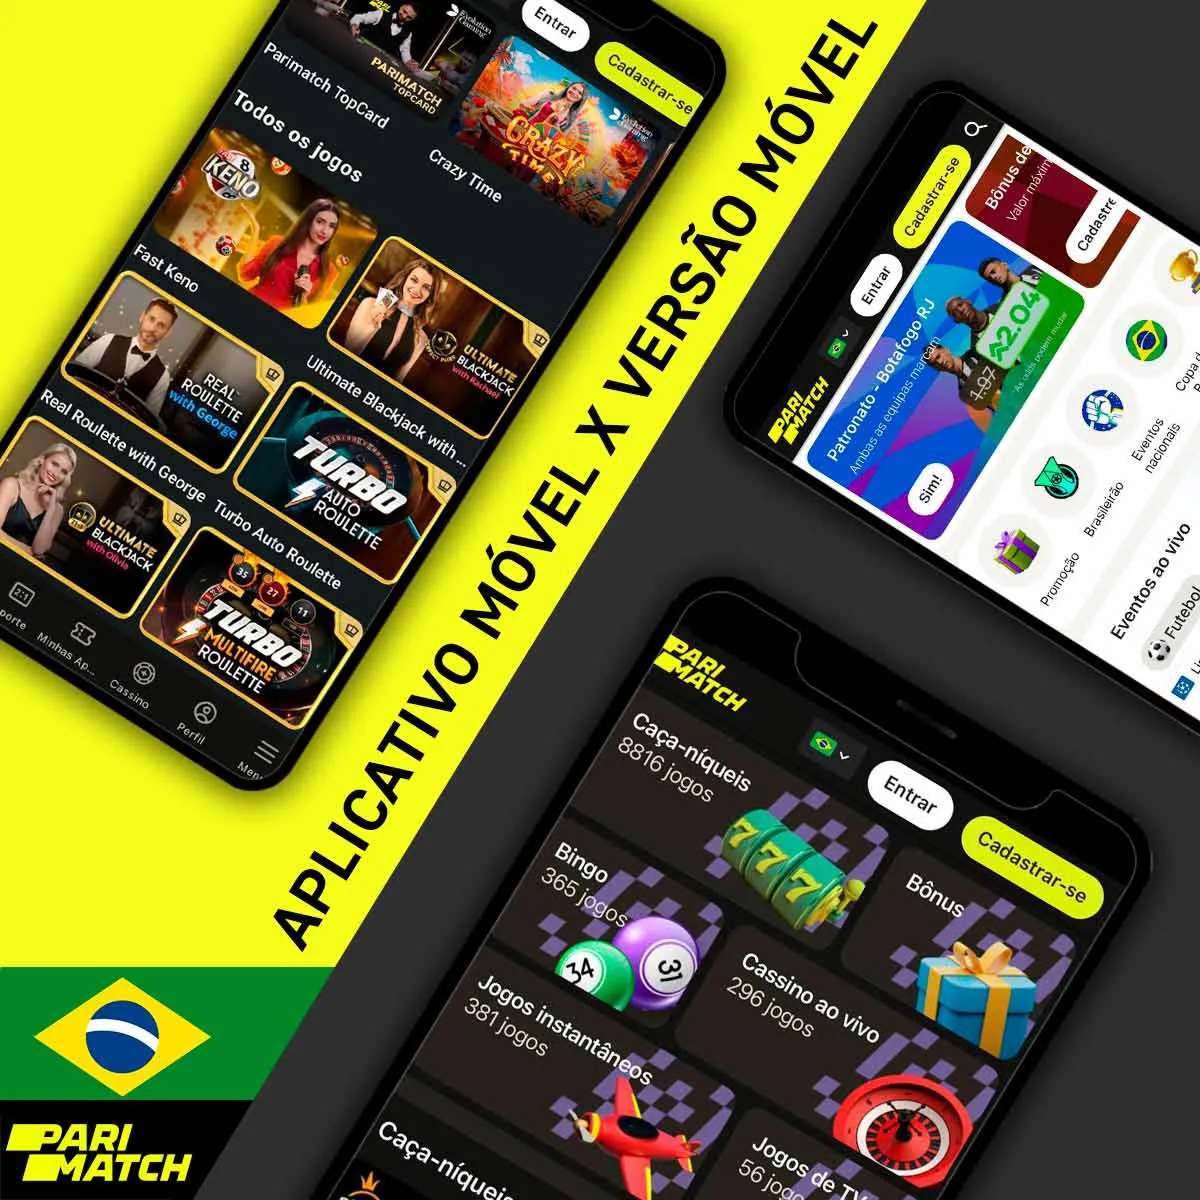 Principais características do aplicativo móvel e da versão móvel da casa de apostas Parimatch no Brasil